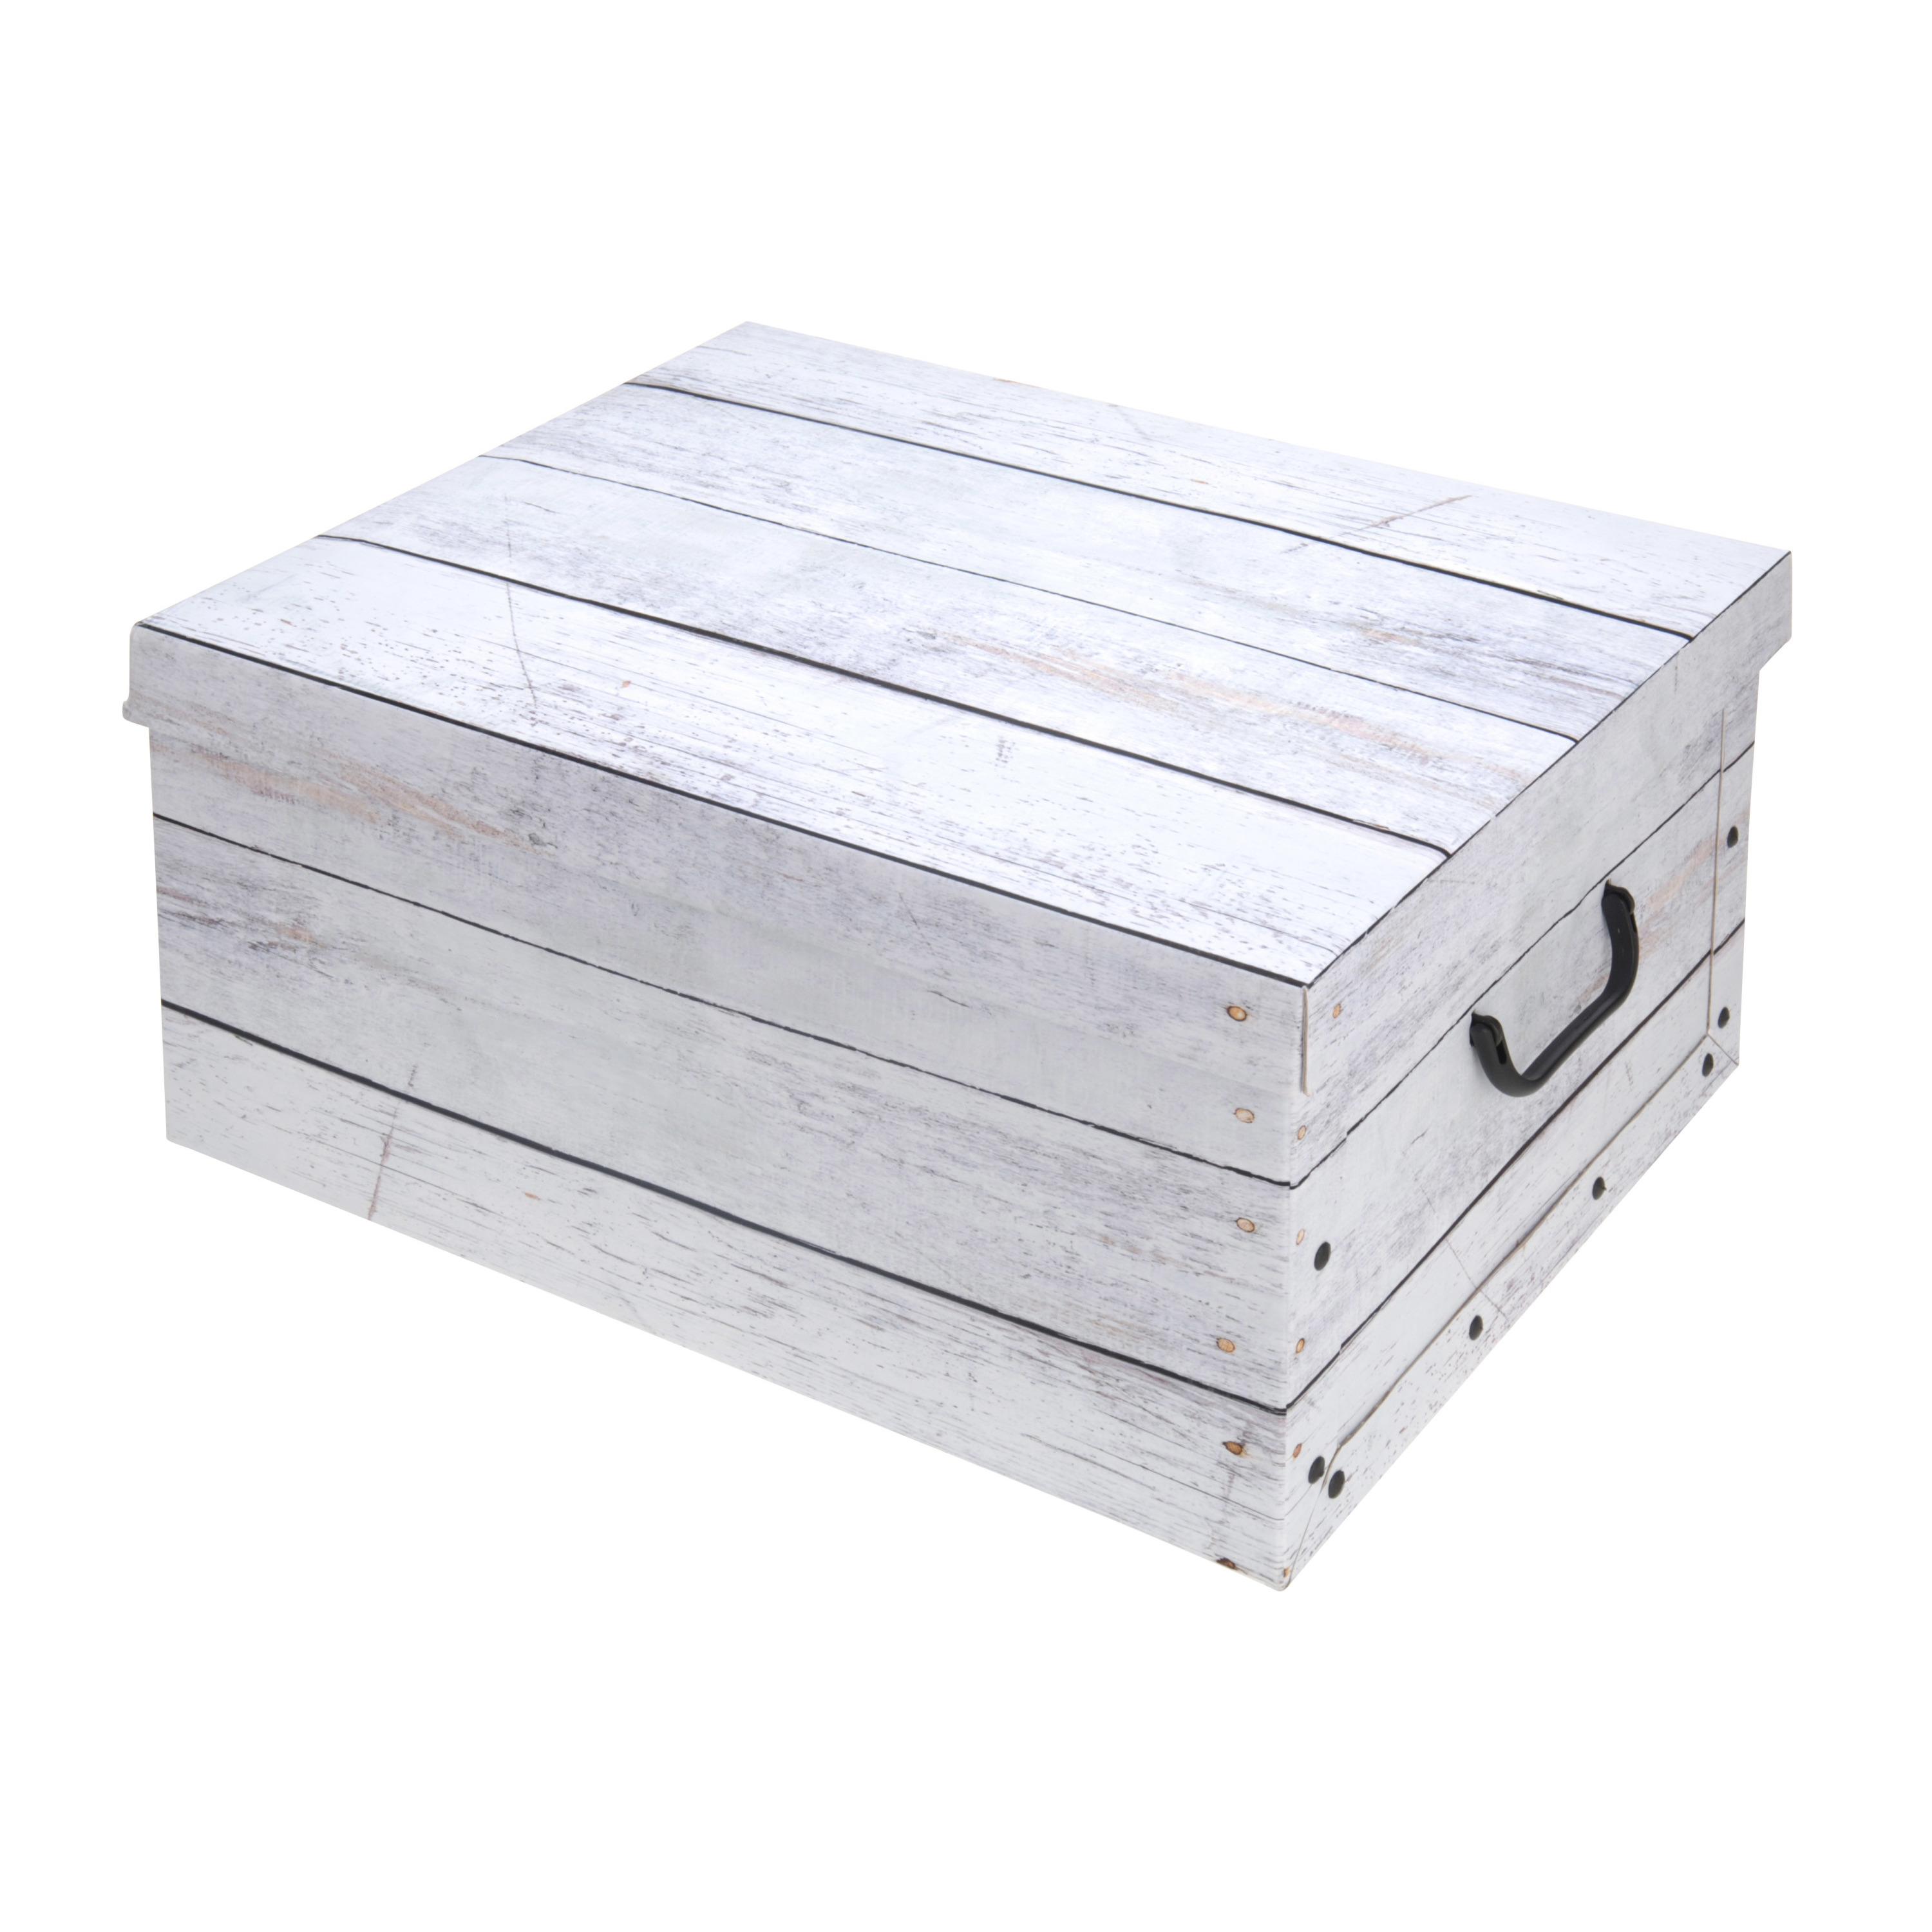 Opbergdoos-opberg box van karton met hout print wit 37 x 30 x 16 cm